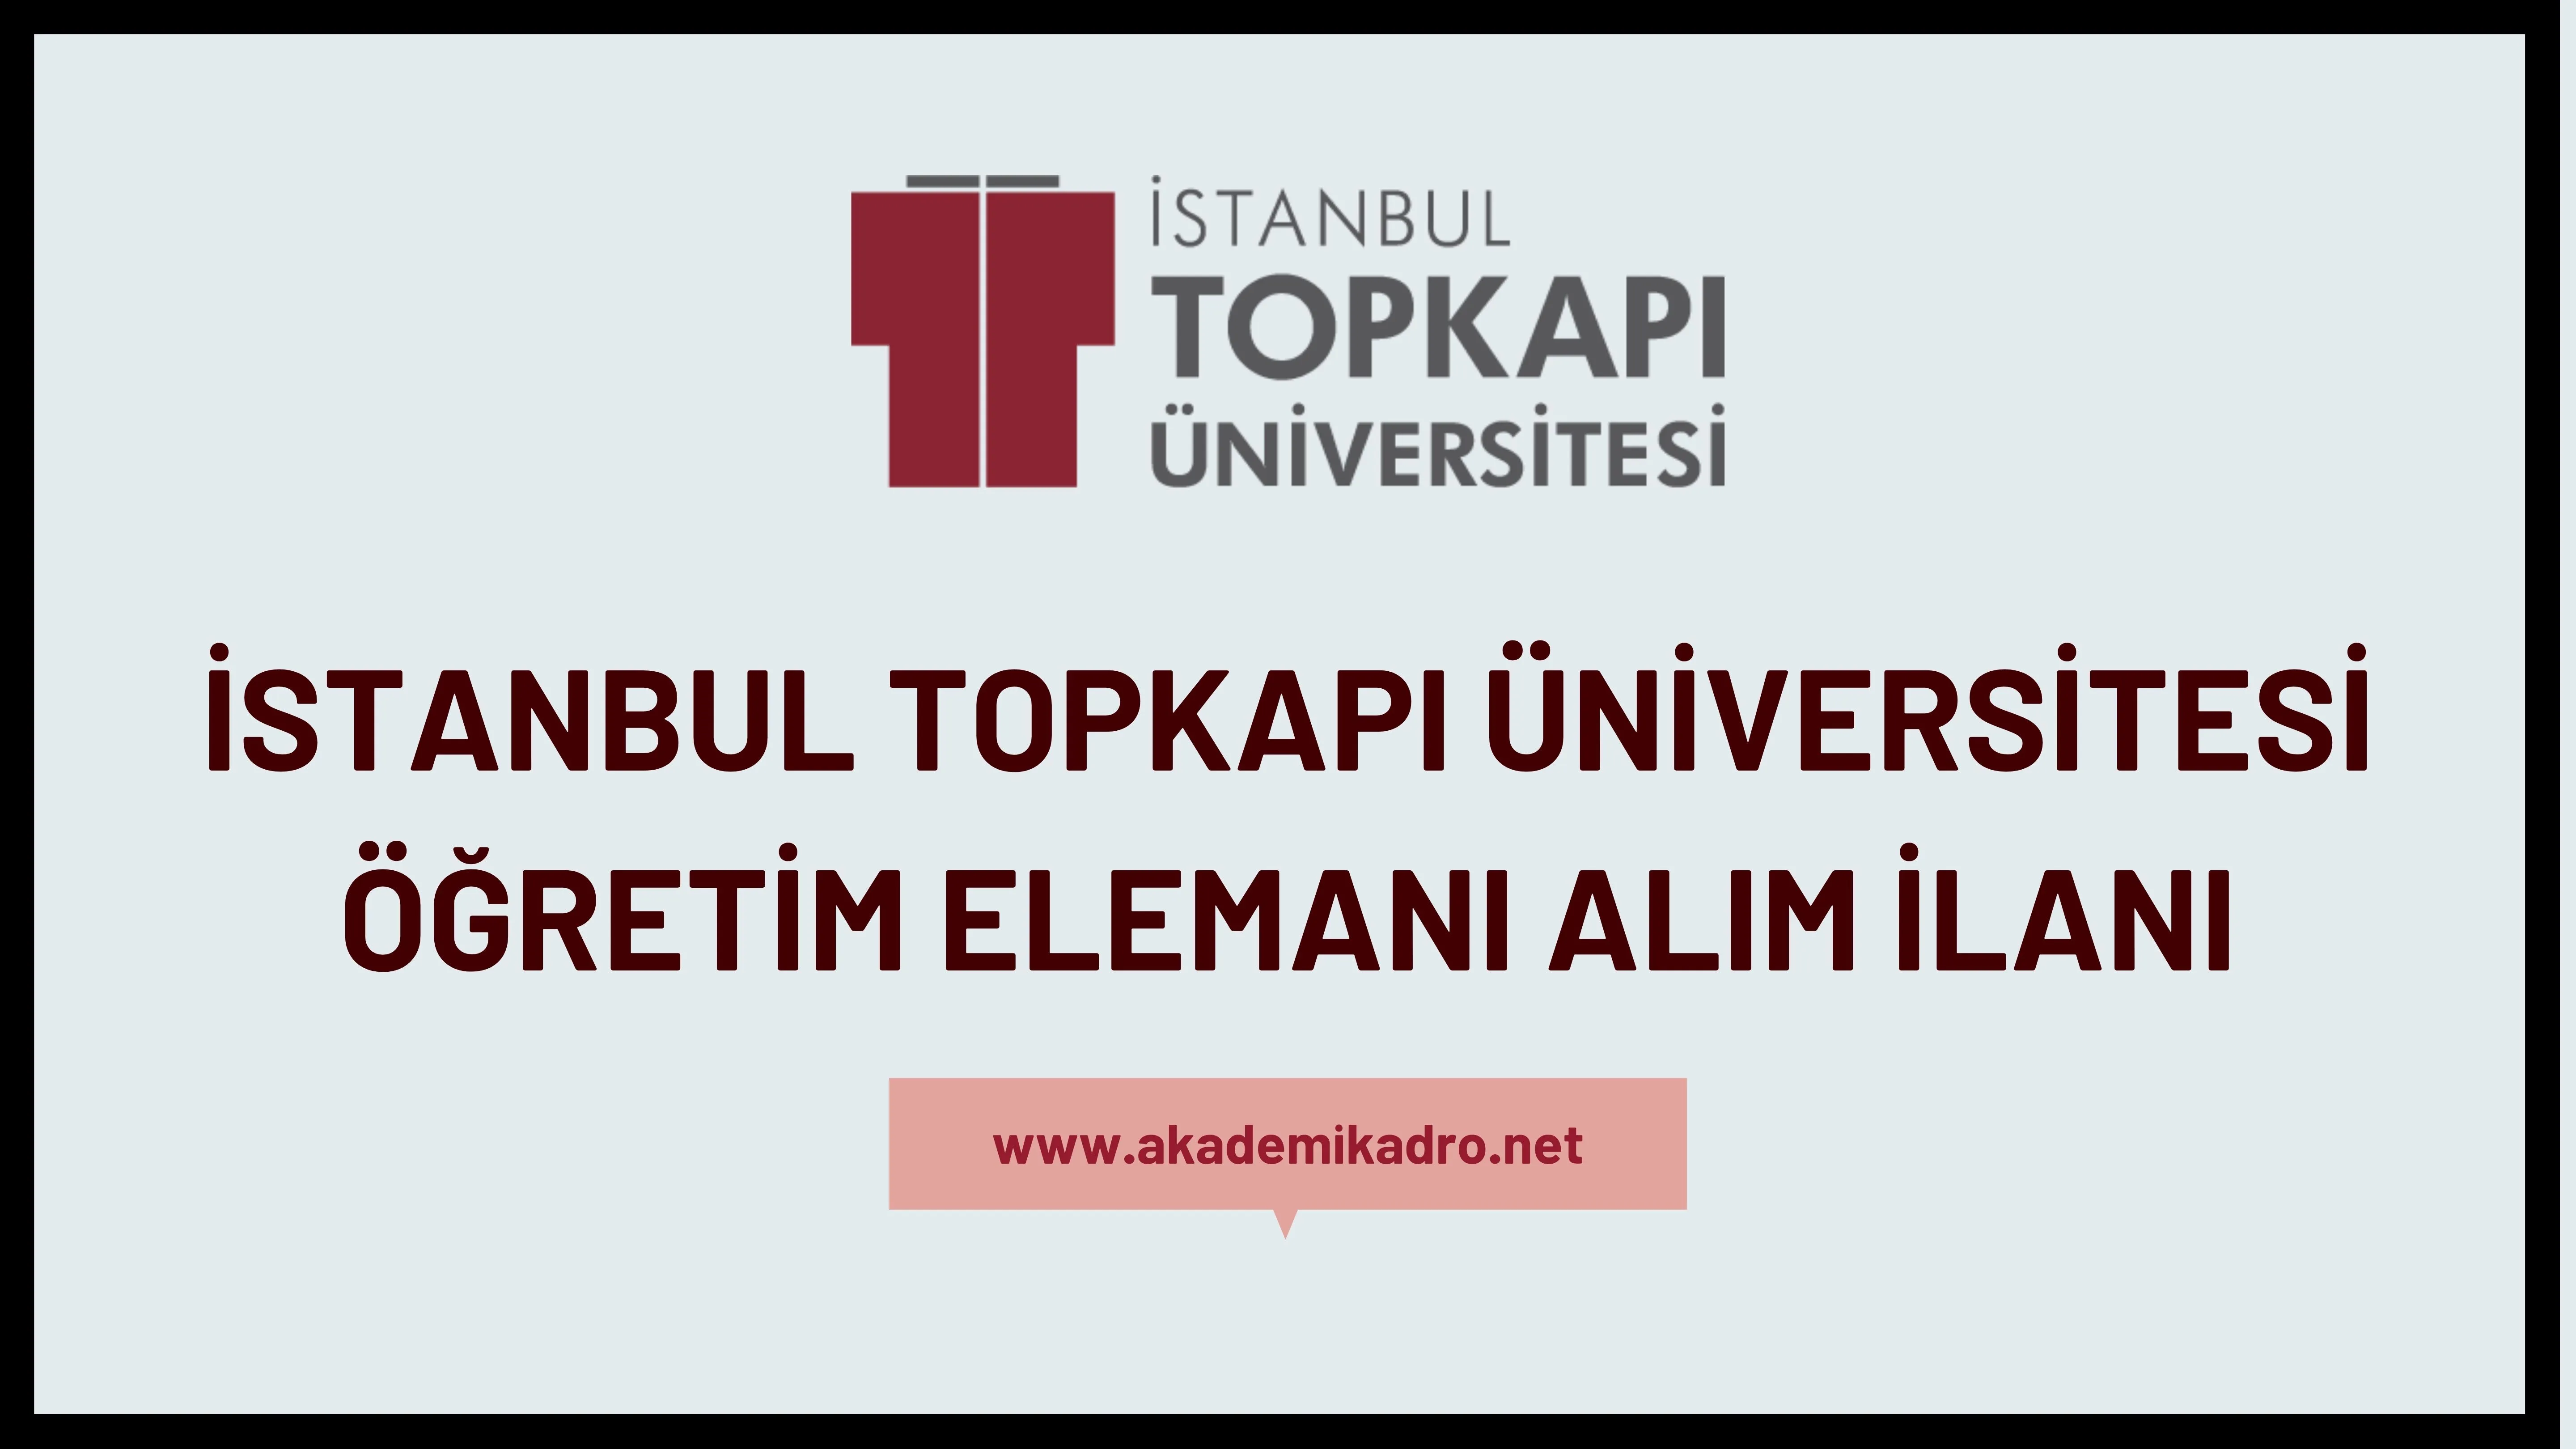 İstanbul Topkapı Üniversitesi 10 Öğretim görevlisi, 2 Araştırma görevlisi ve 23 Öğretim üyesi alacak.